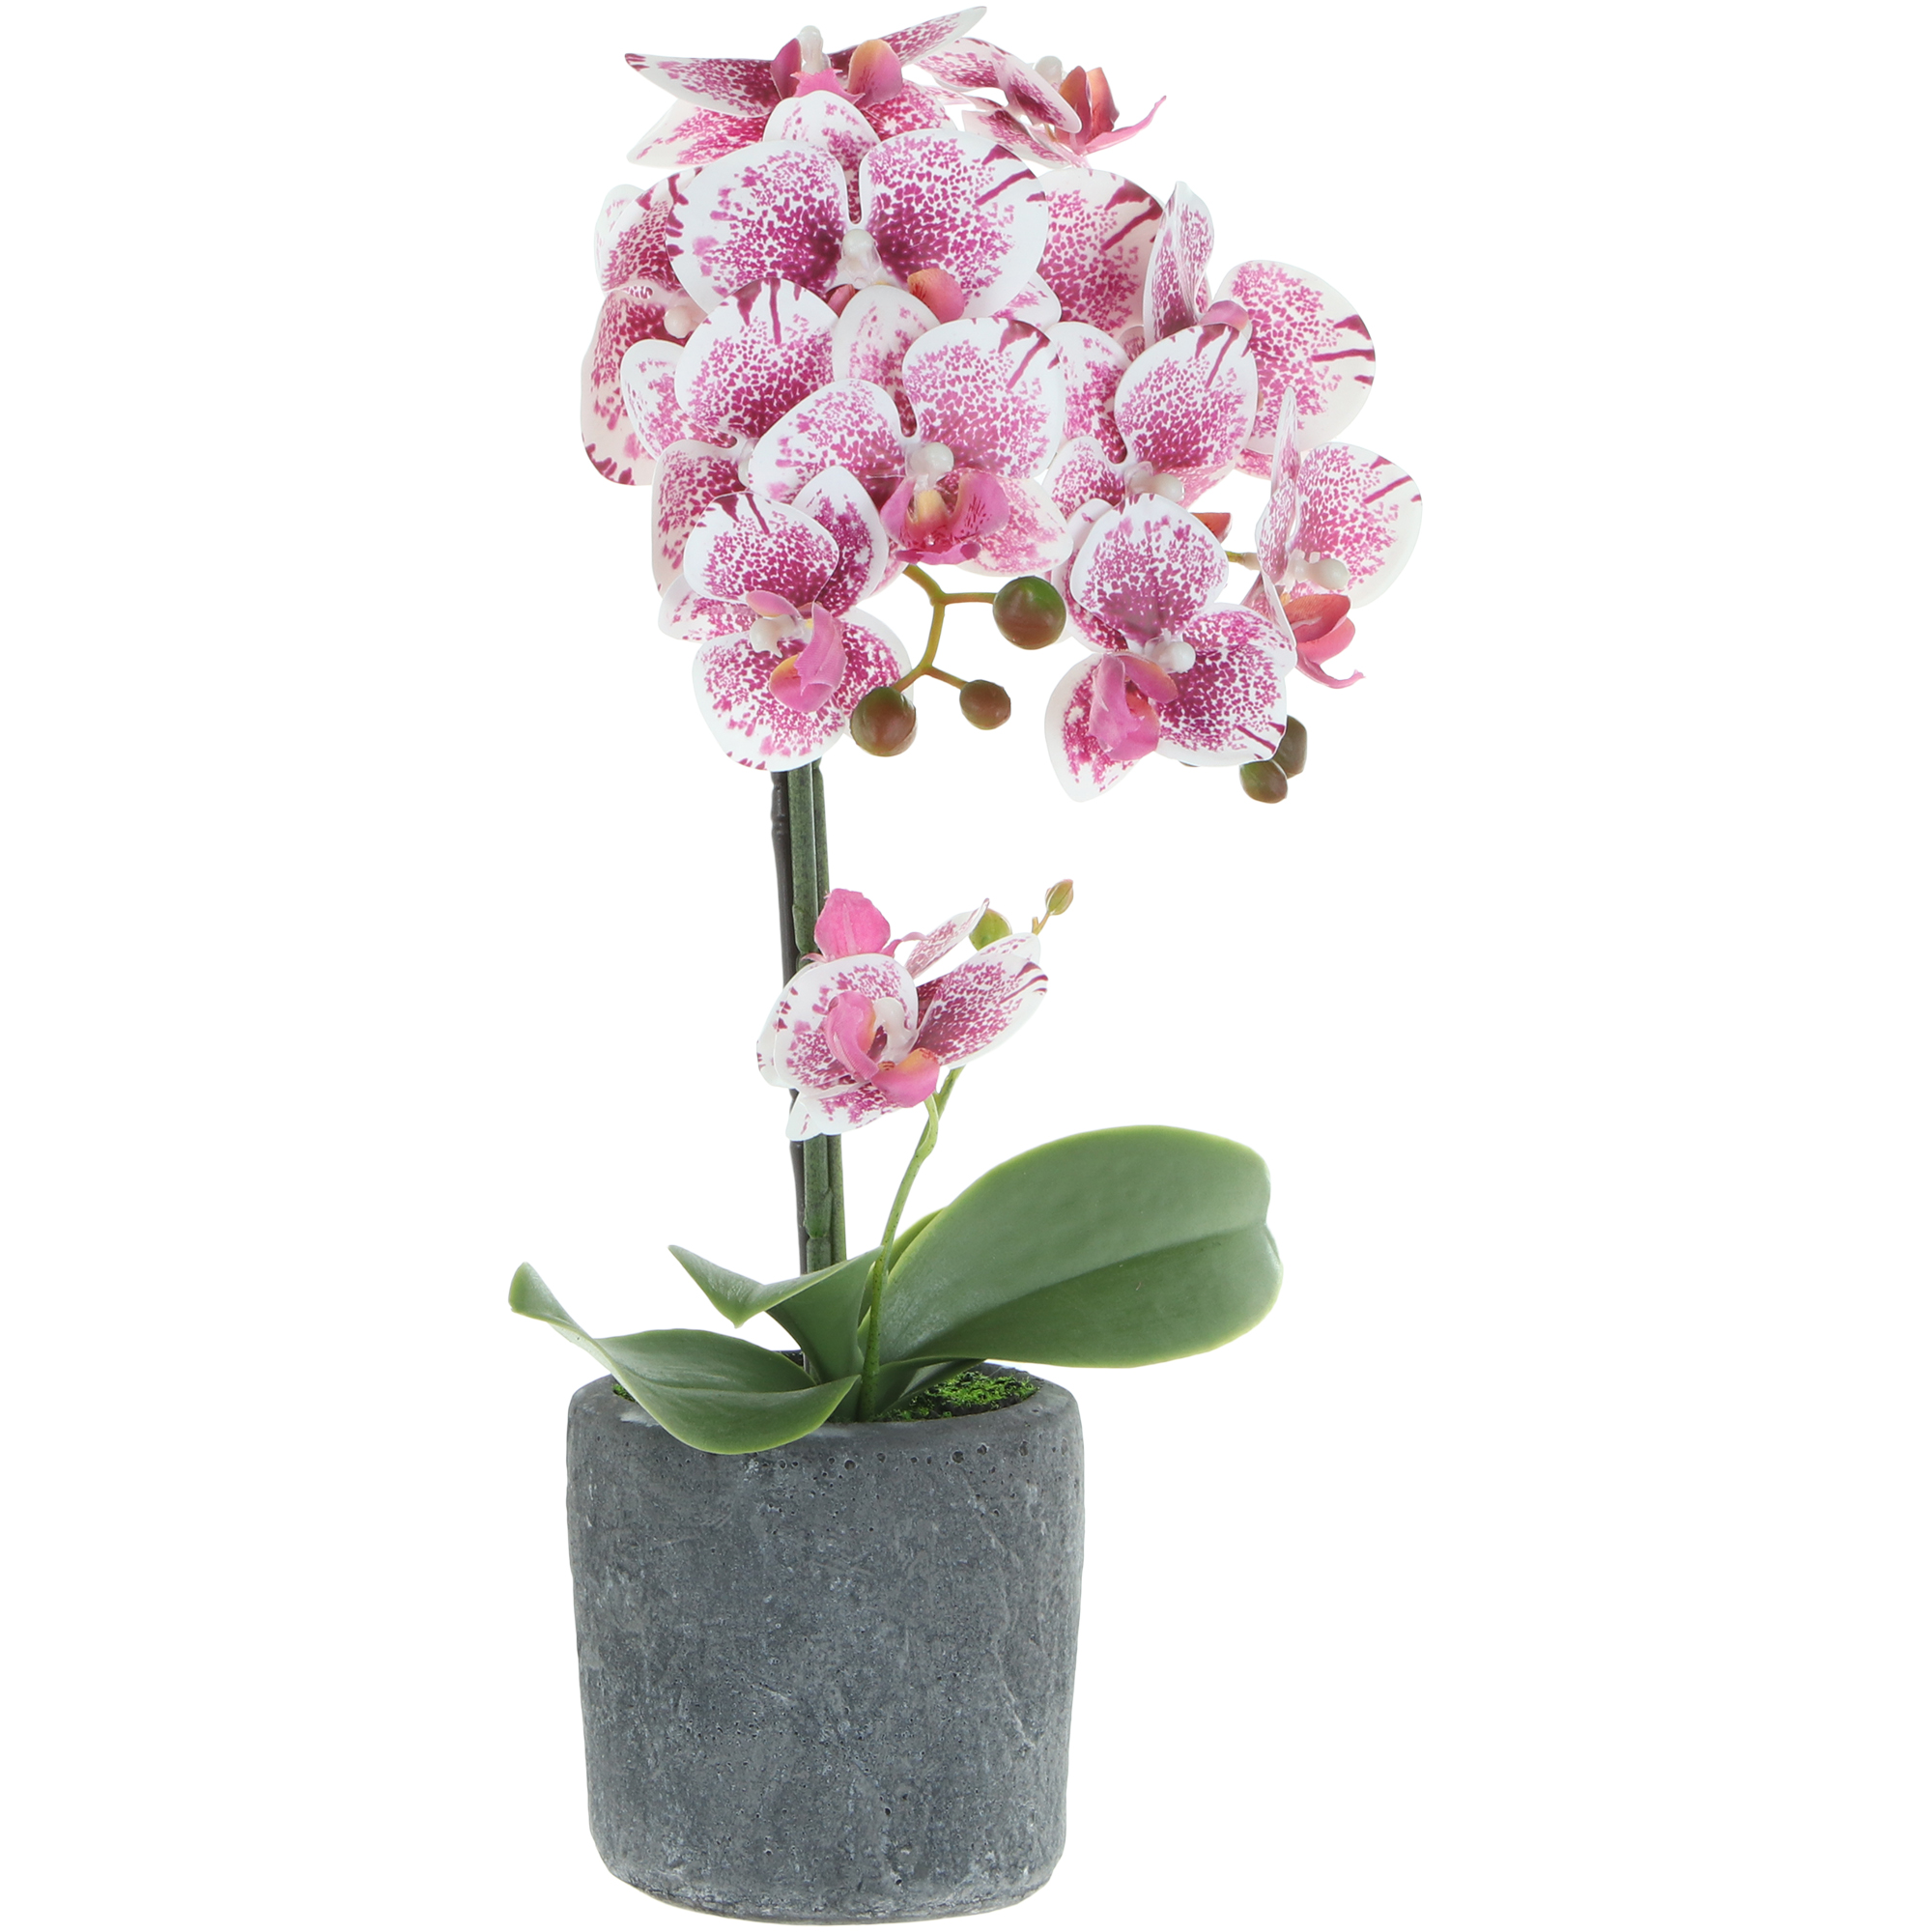 Цветок искусственный в горшке Fuzhou Light орхидея бело-розовая, 3 цвета 42 см цветок искусственный dpi орхидея бело розовая 120 см